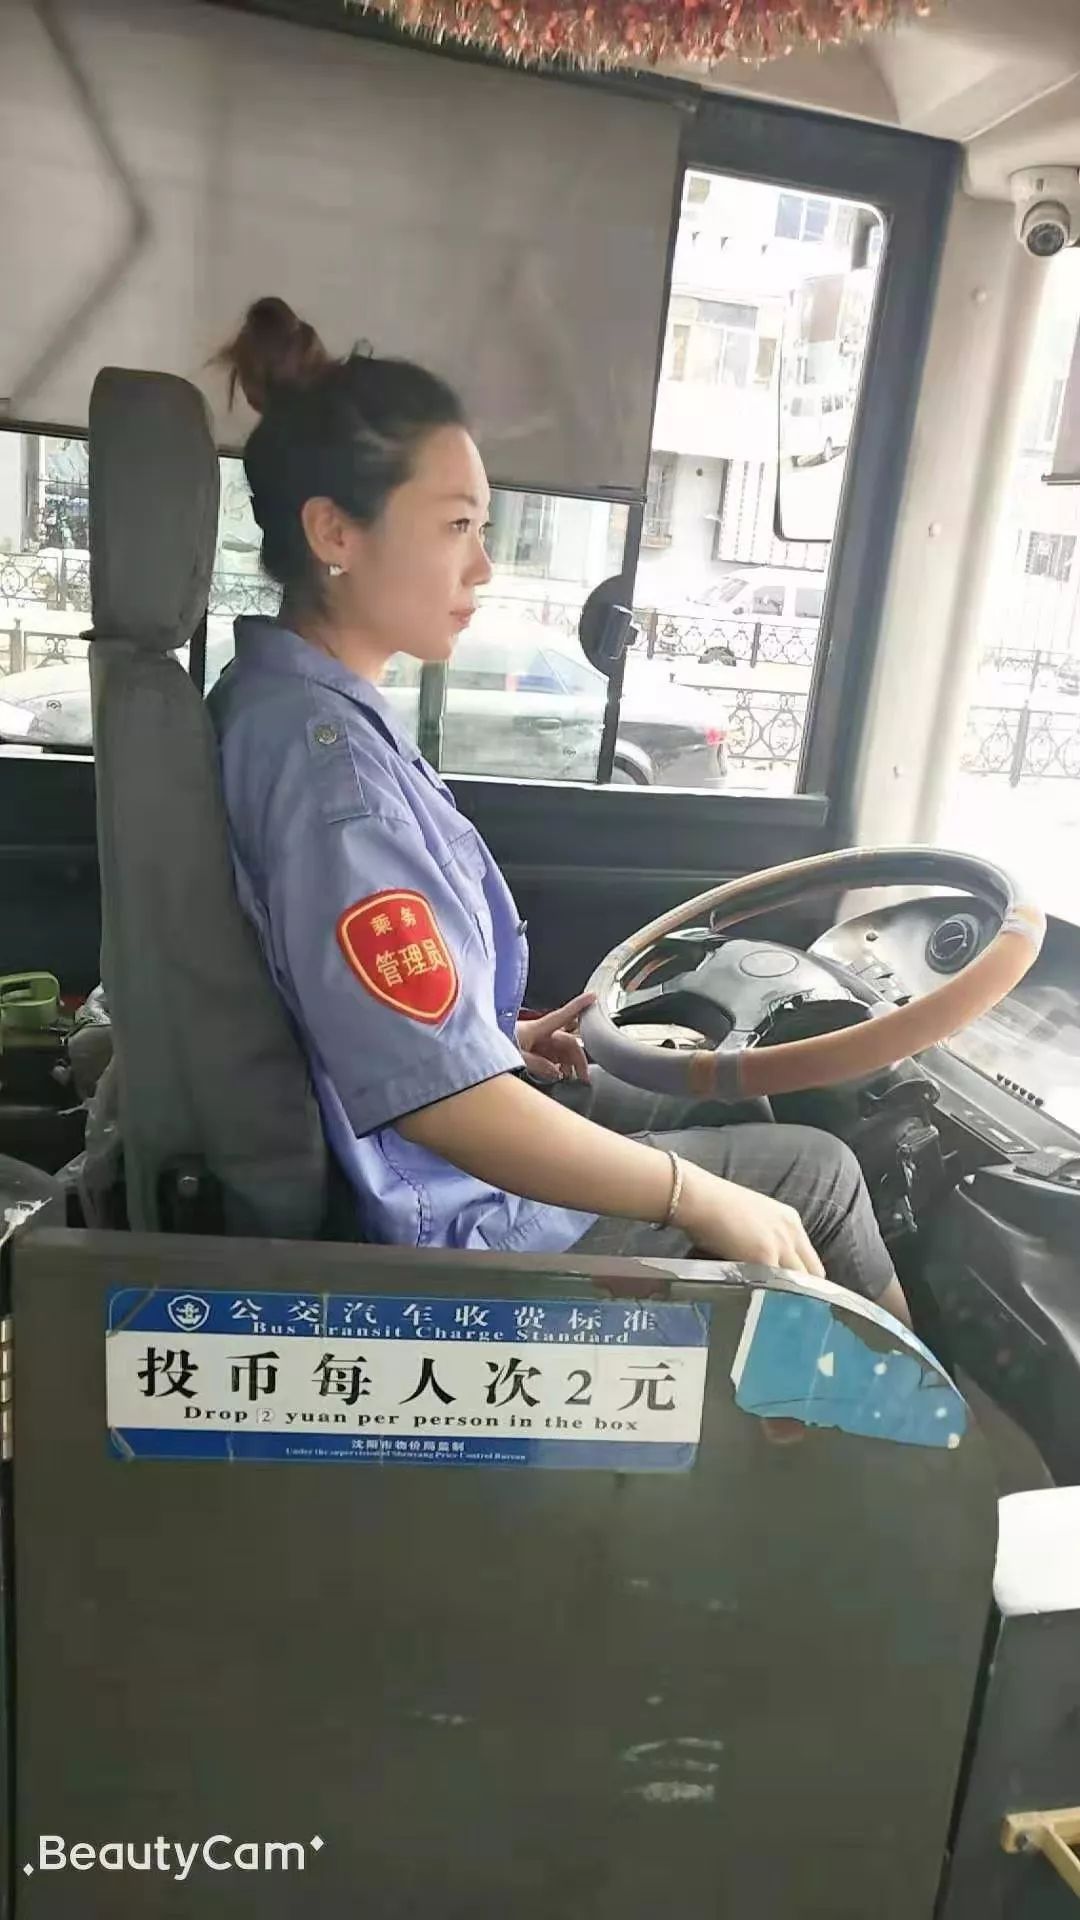 女司机开公交车图片